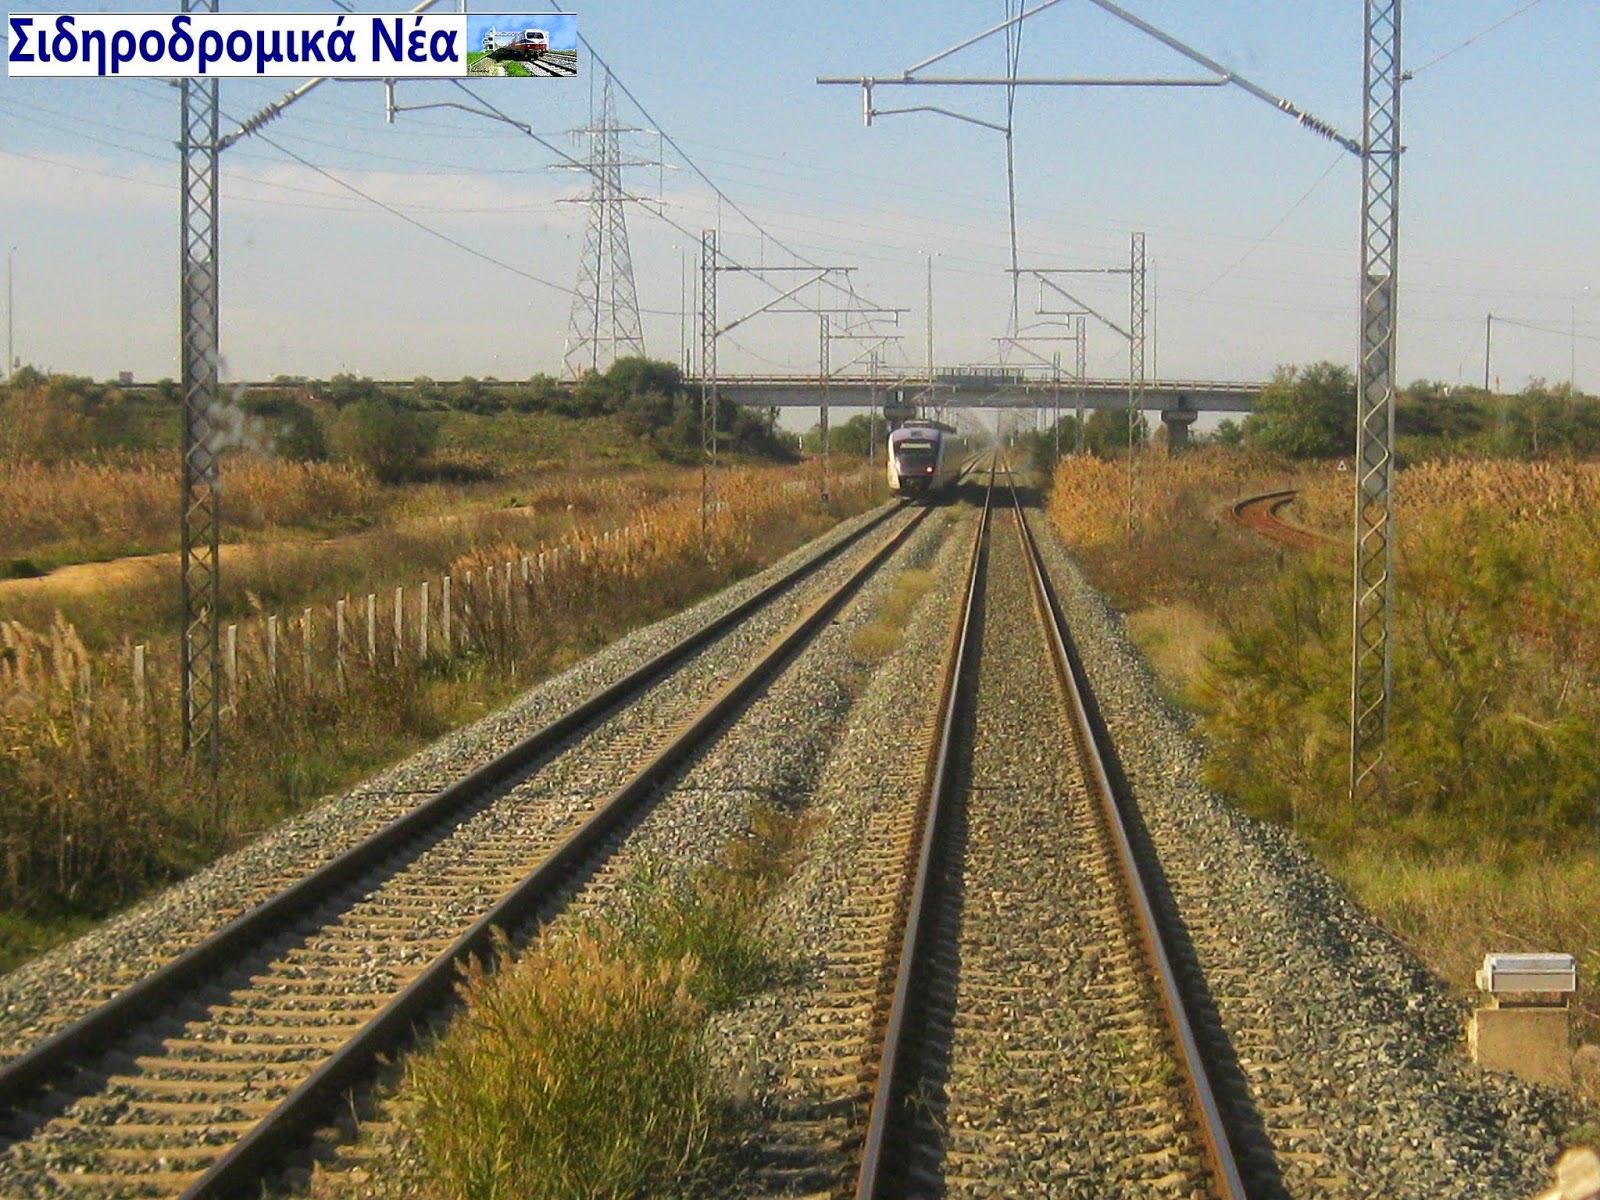 Επενδυτικό άλμα στις κατασκευές στην Ελλάδα βλέπει η Κομισιόν. 7,4 δισ. ευρώ σε σιδηροδρομικά έργα. - Φωτογραφία 1